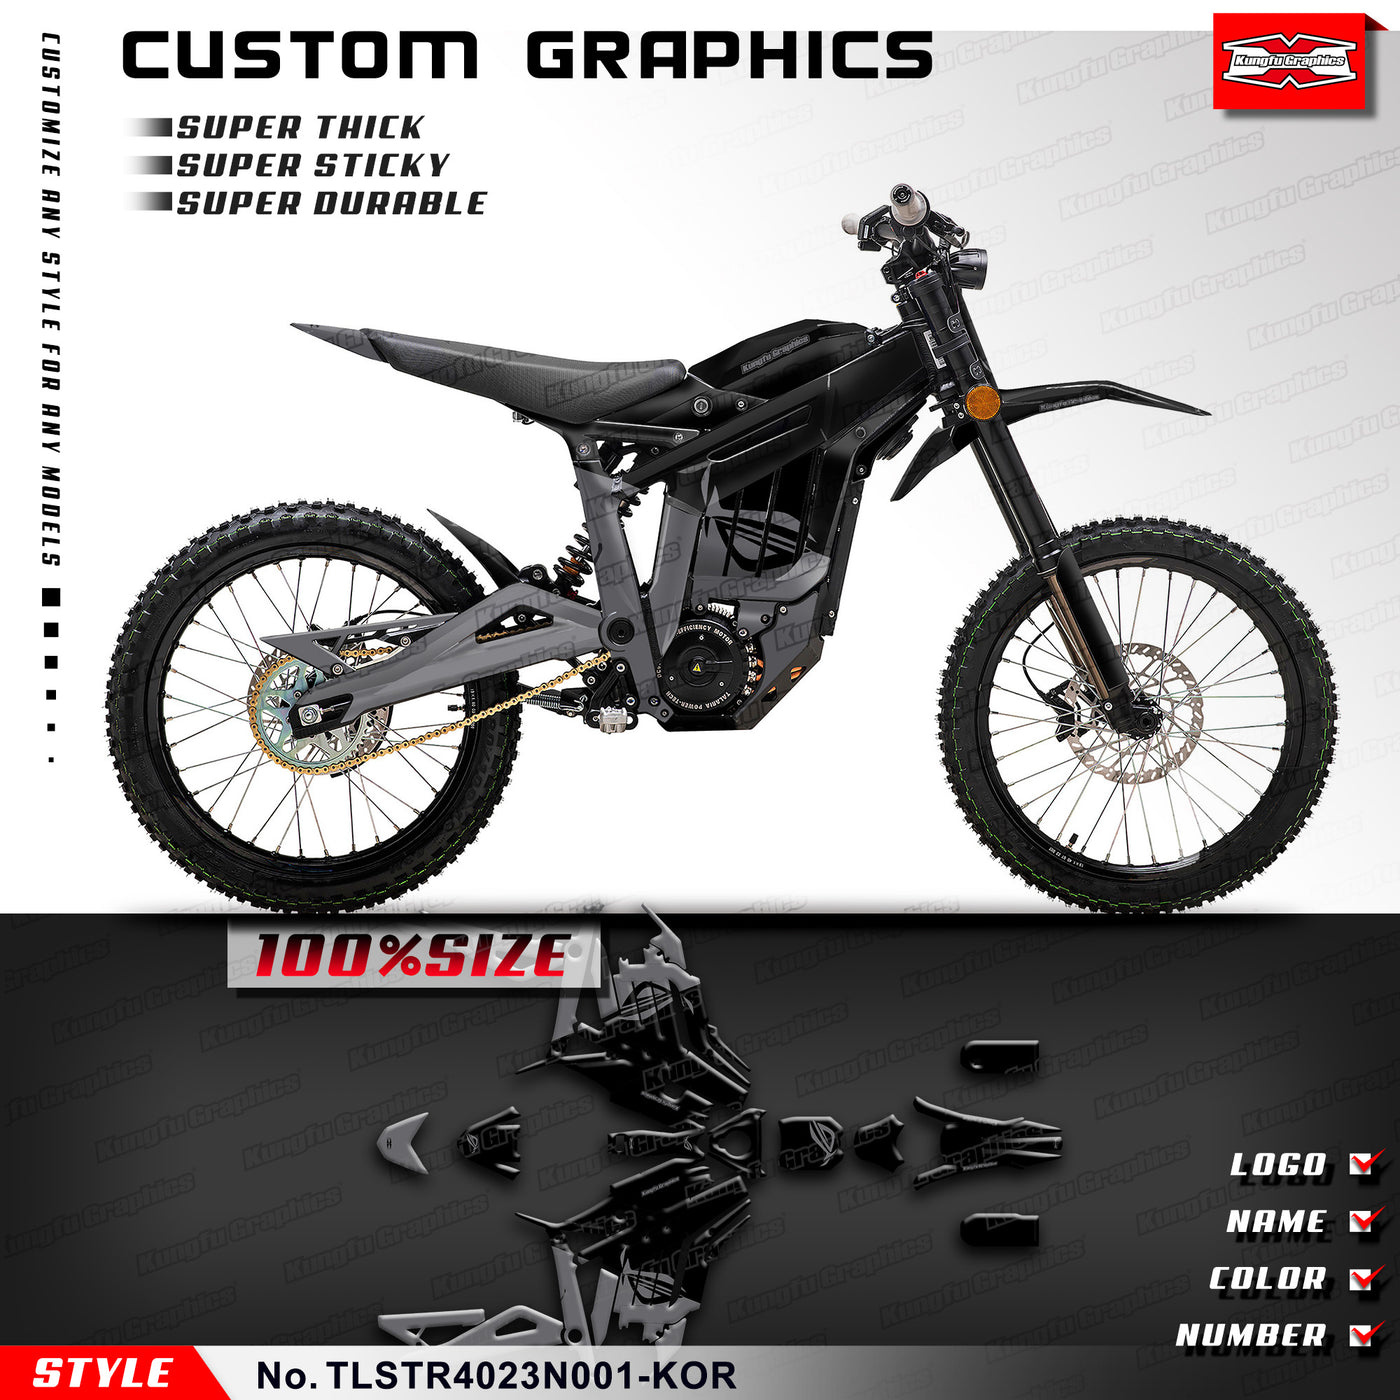 Talaria Dirt Bike Graphics Custom Decal Kit